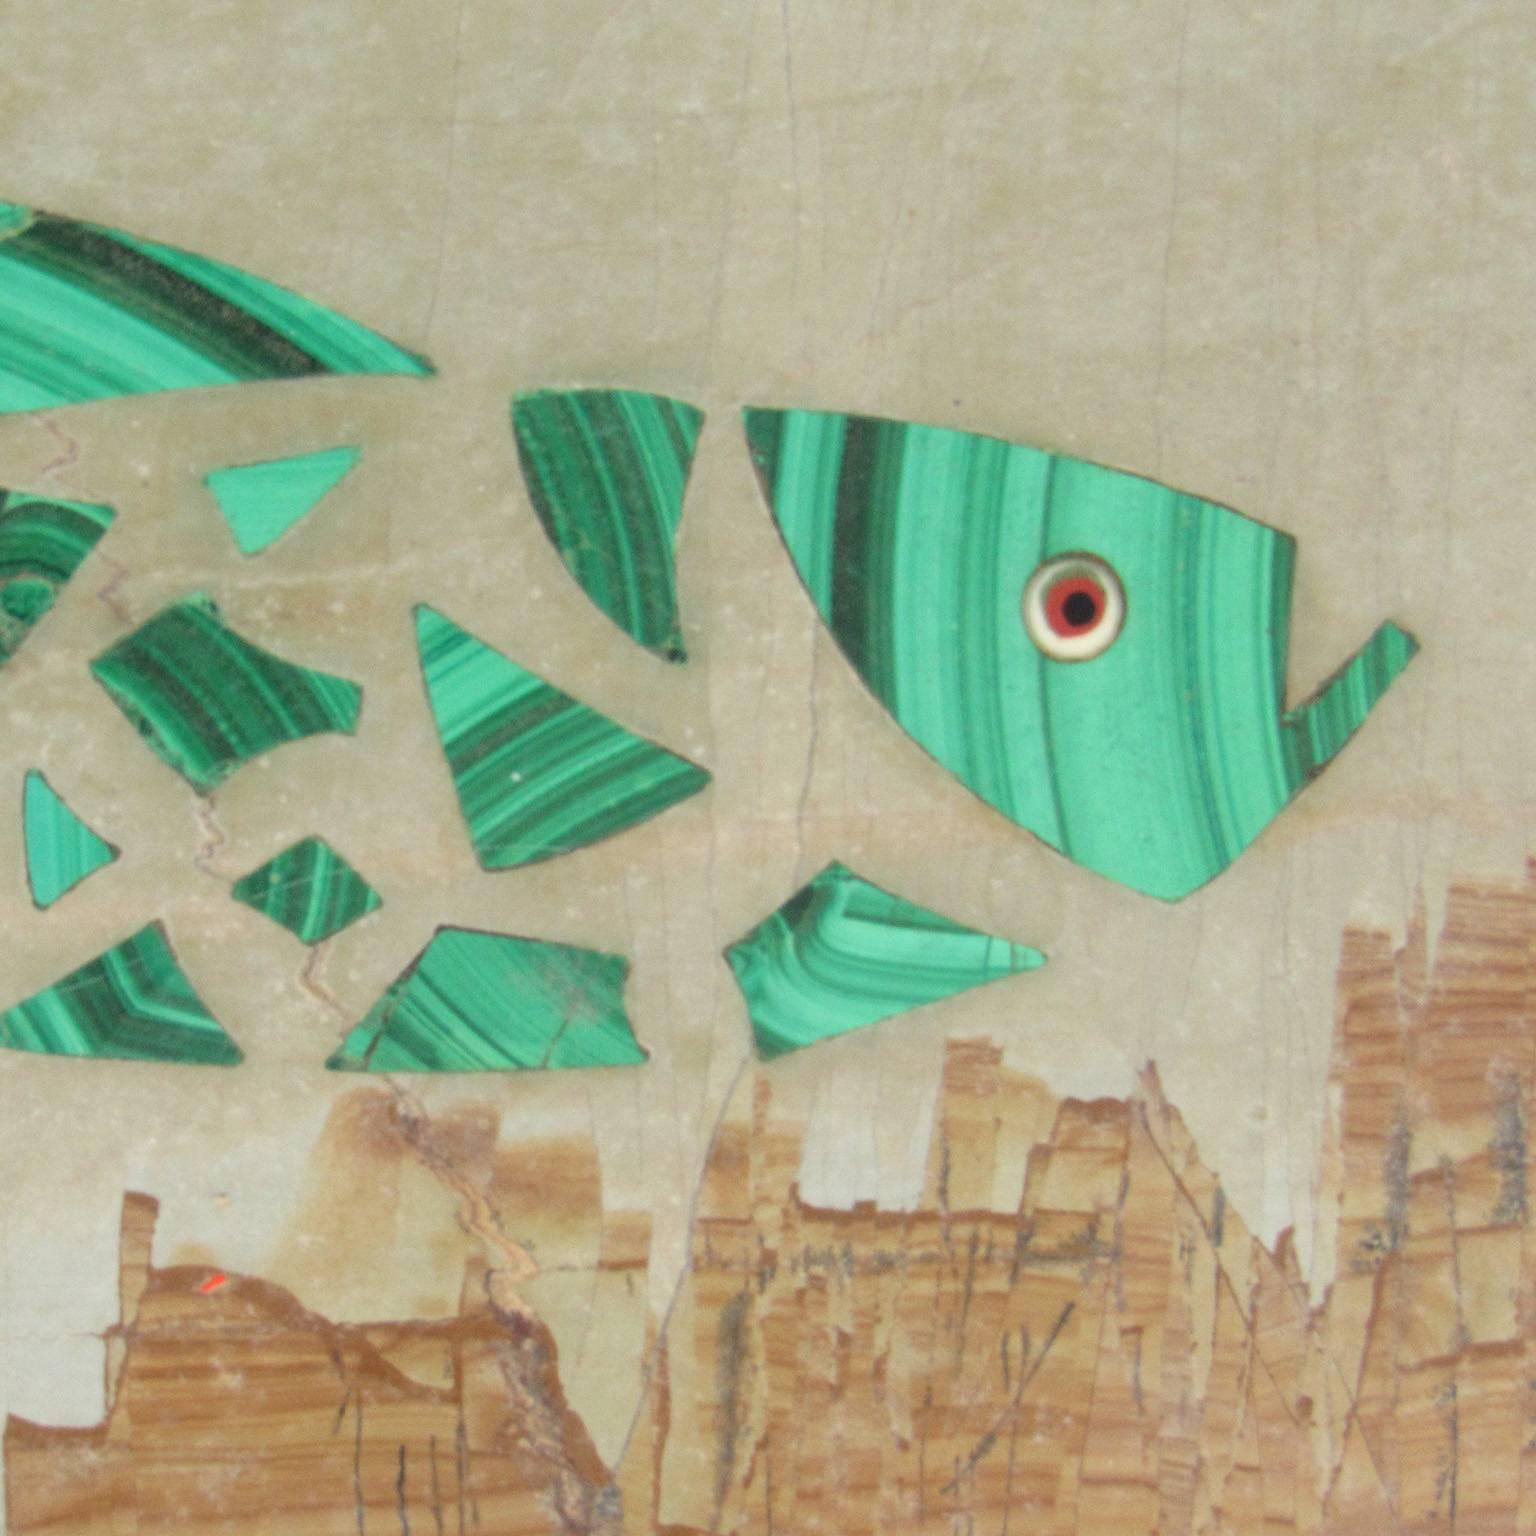 Whimsical antique Italian Pietra Dura fish plaque
Measures: 3 1/8 x 5 5/8 x 3/16 inches.